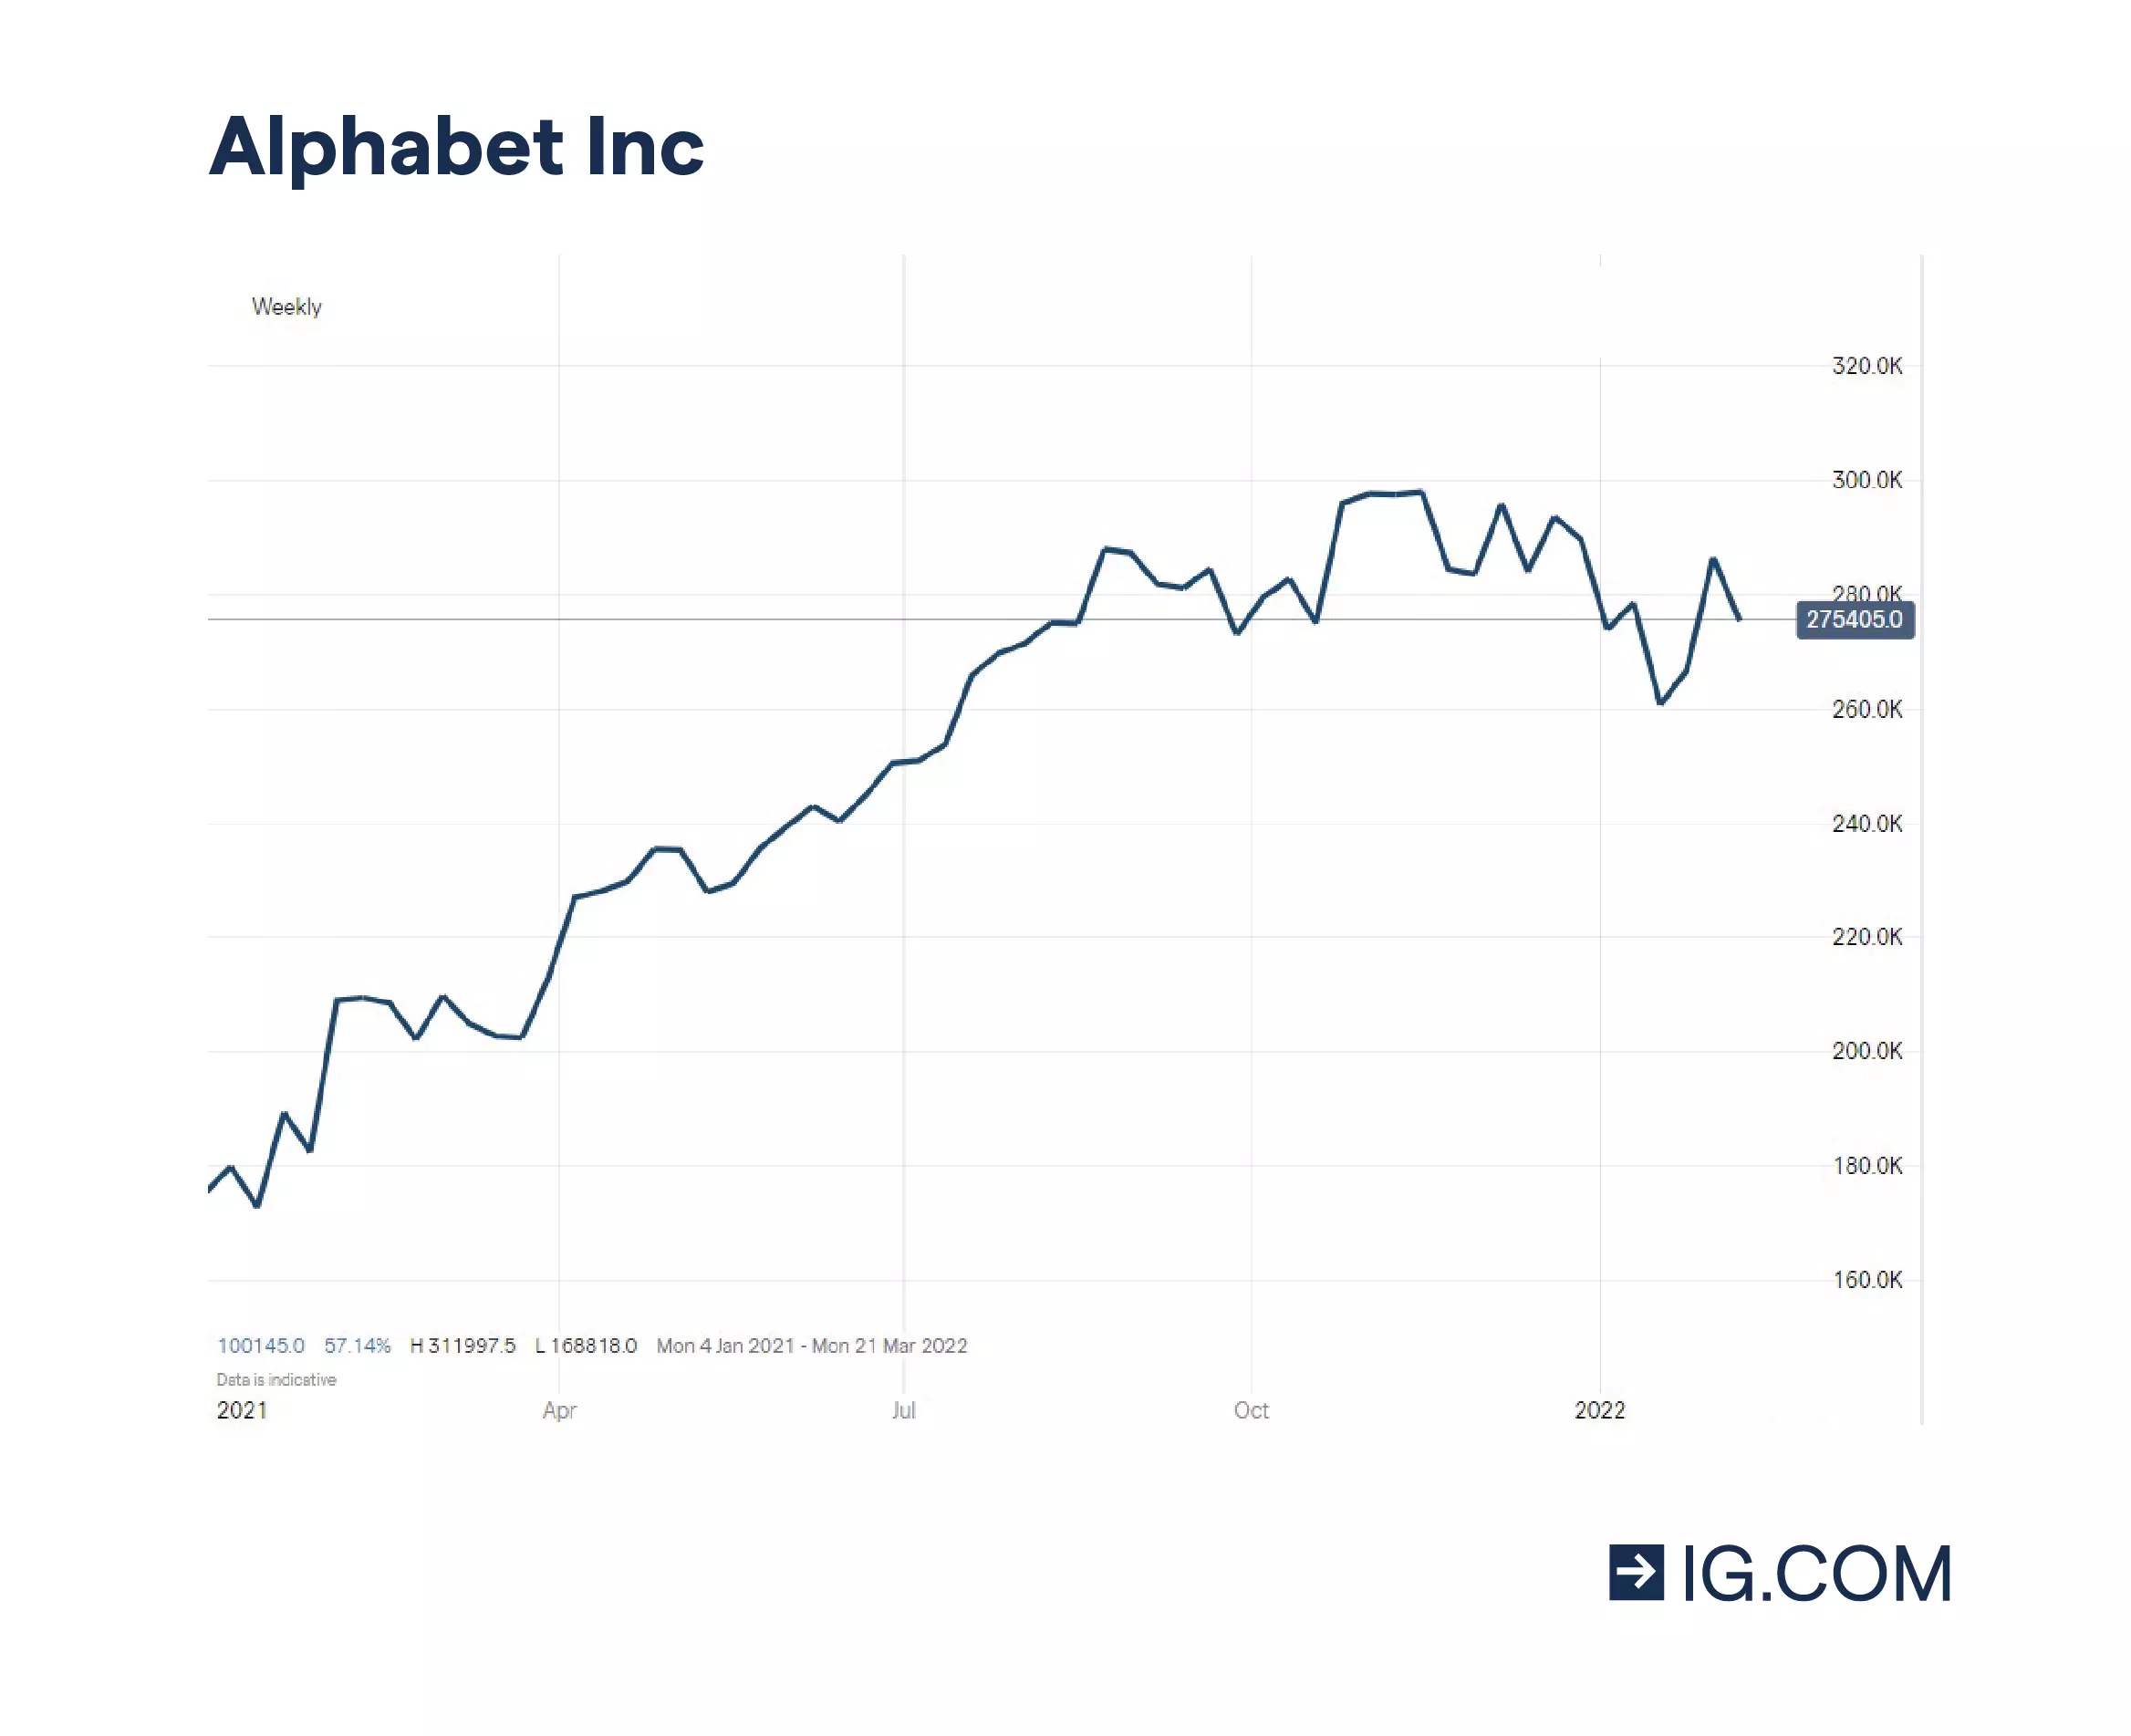 Den oppadgående trenden til Alphabets (som eier Google Inc.) aksjekurs over tid.